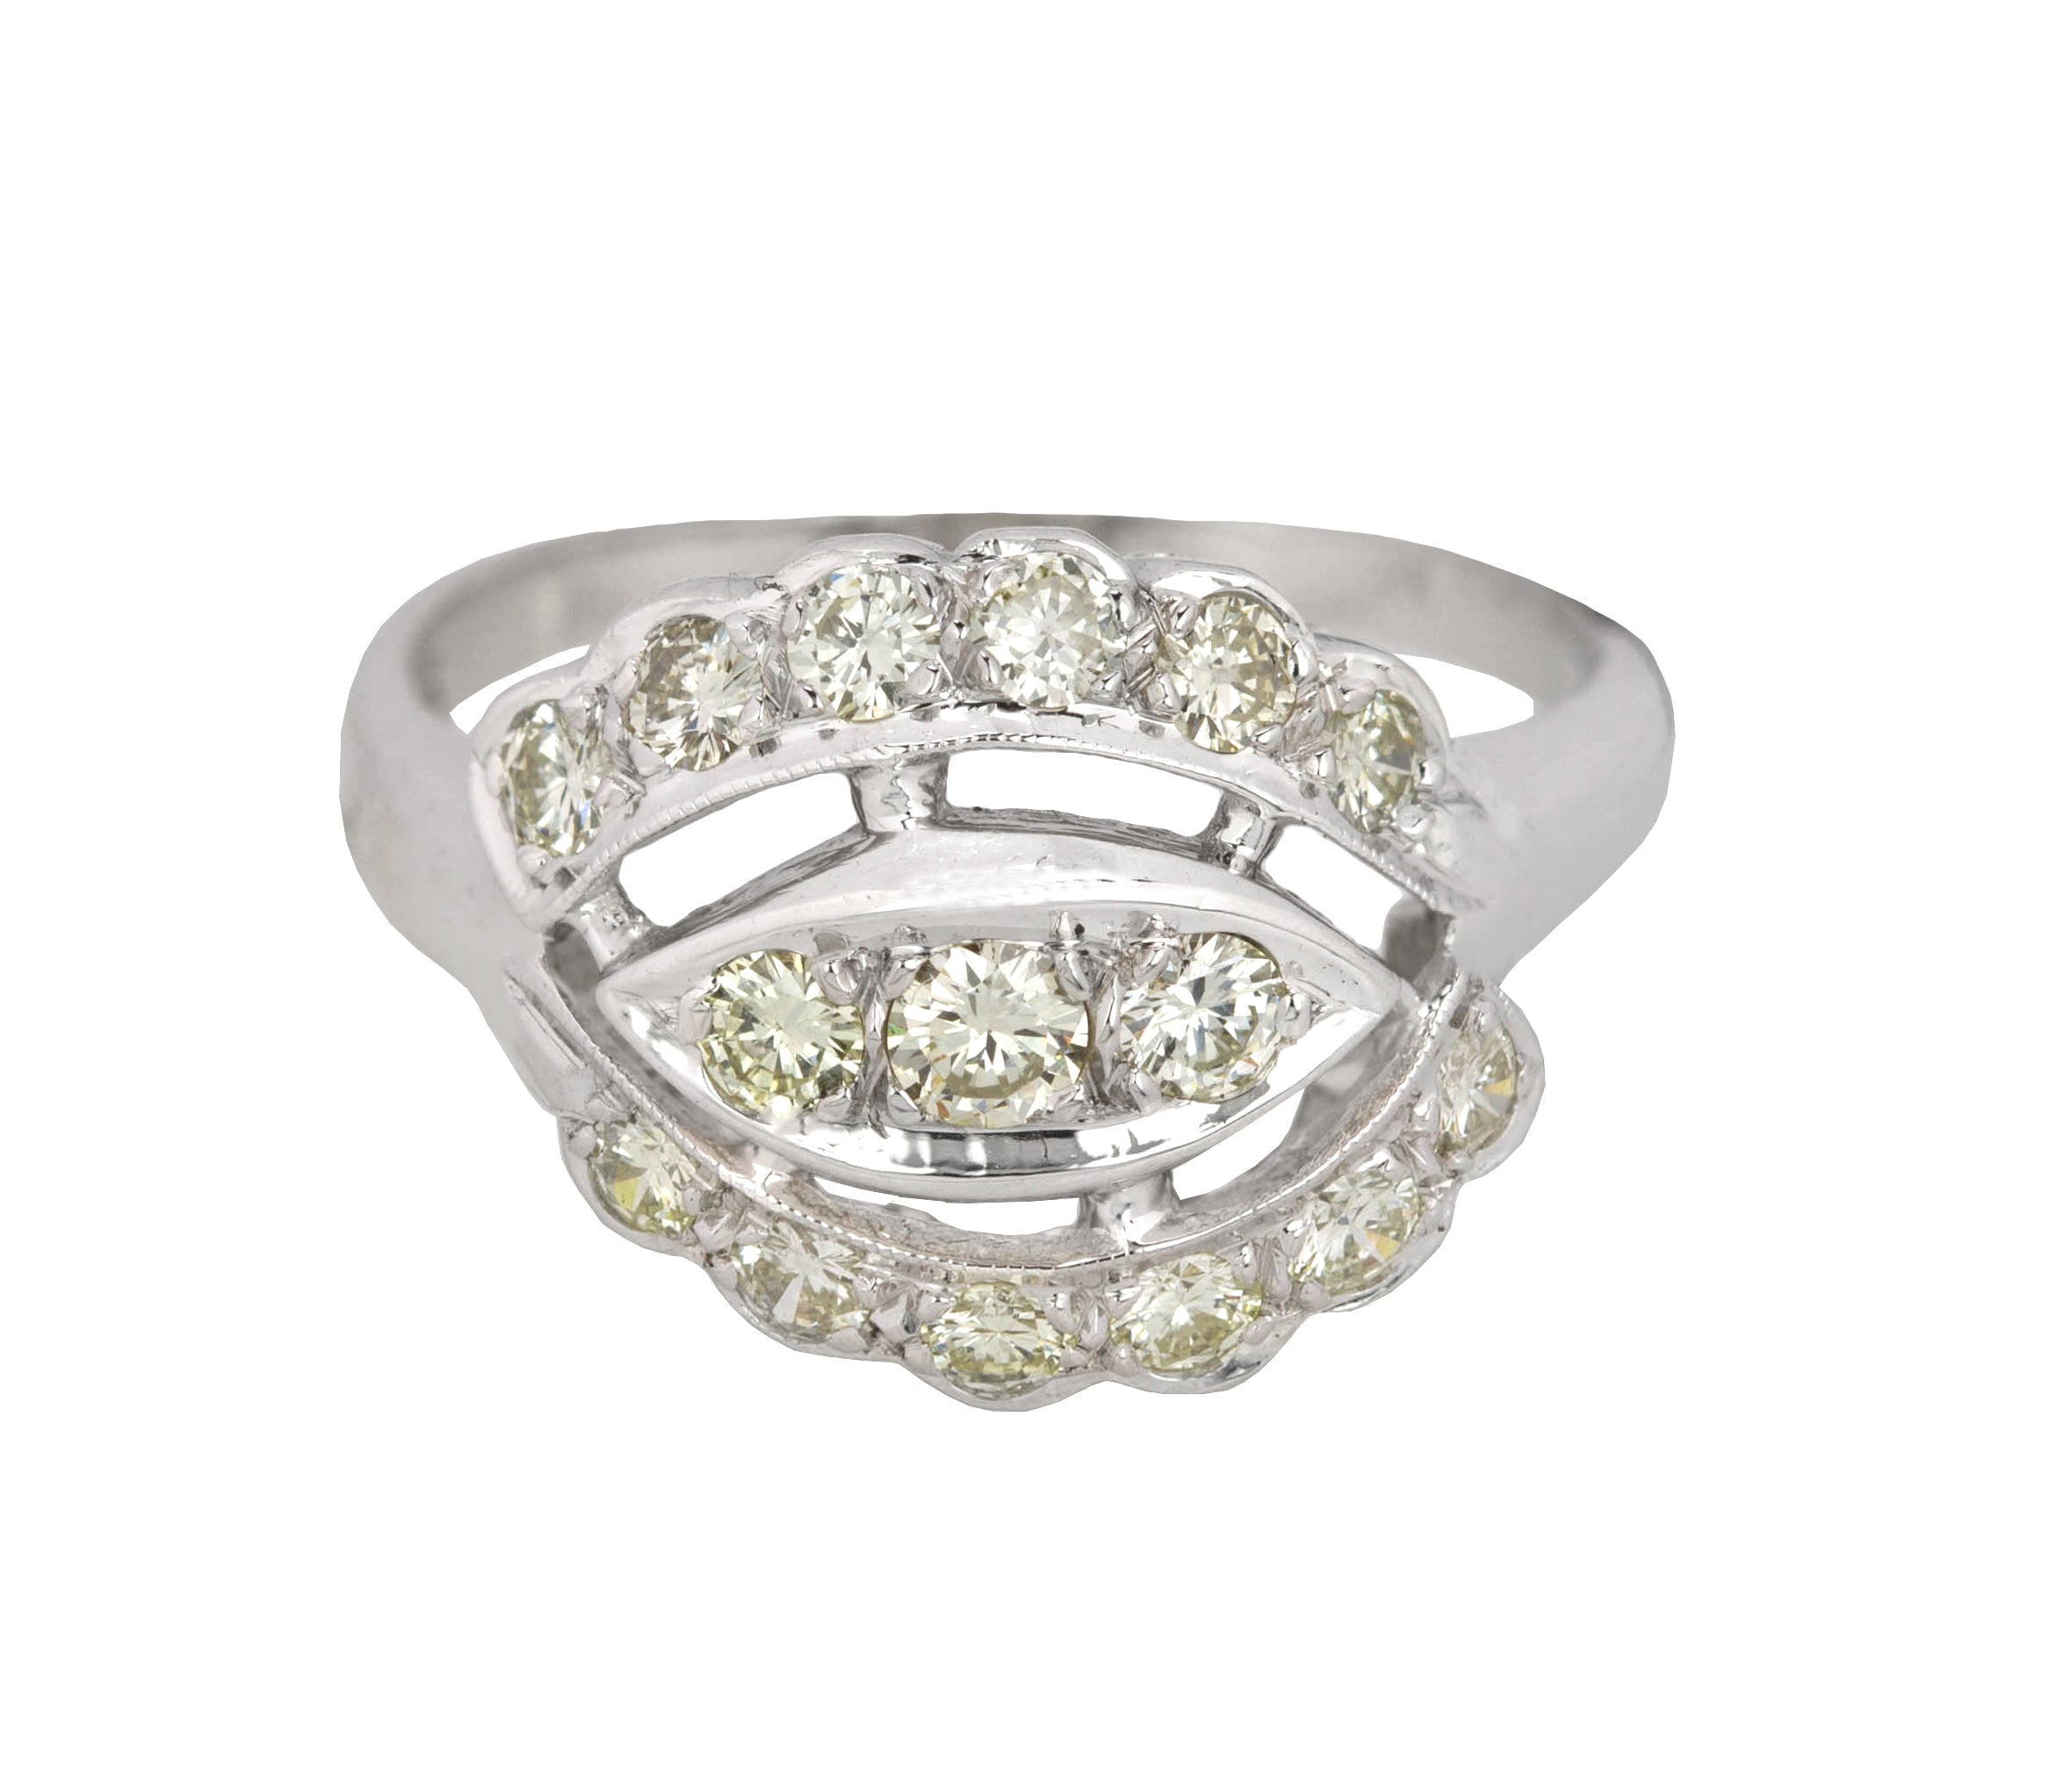 Women's Modernist 14k White Gold 0.80ctw Diamond Ornate Cocktail Ring